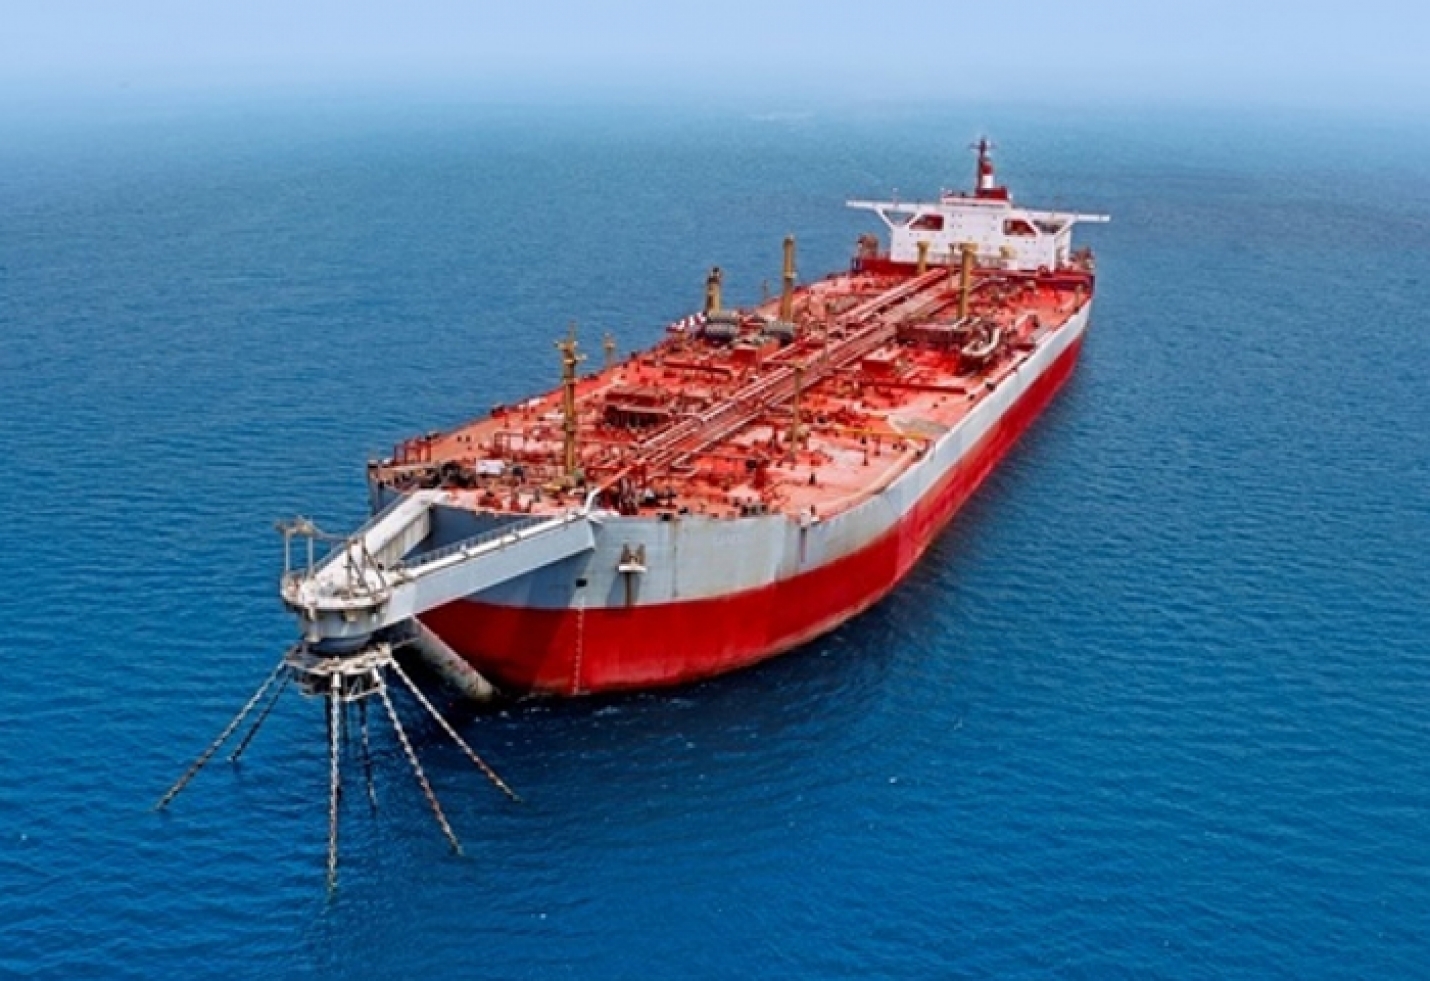 Yemen Tanker Oil Spill